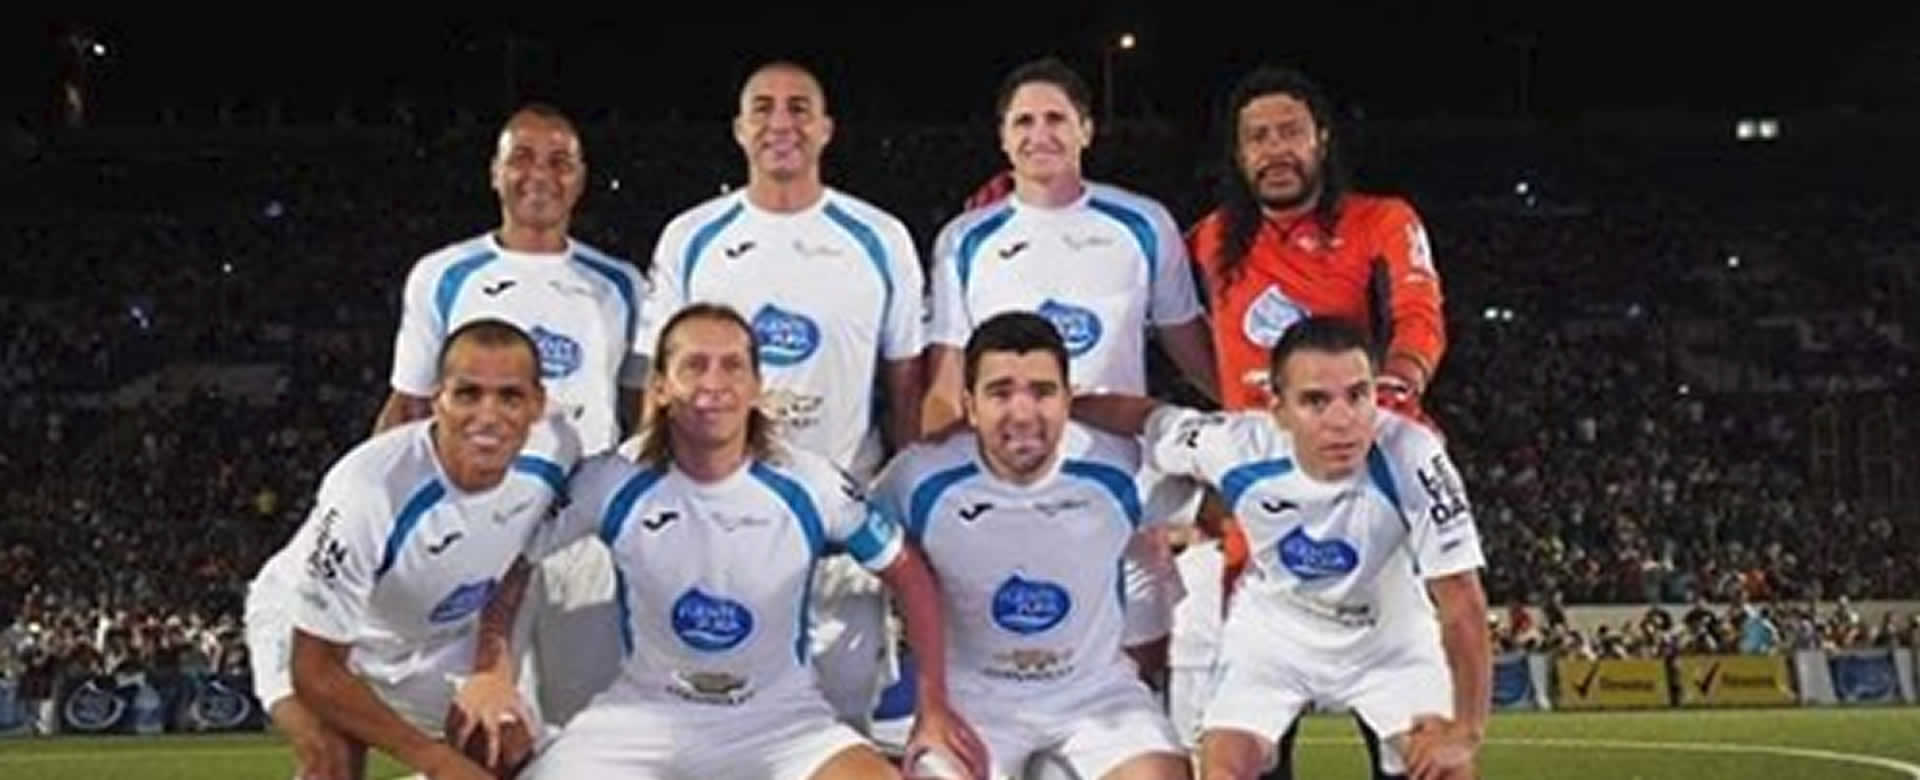 Leyendas del Fútbol agradecen calor hogareño y confían en poder regresar a Nicaragua